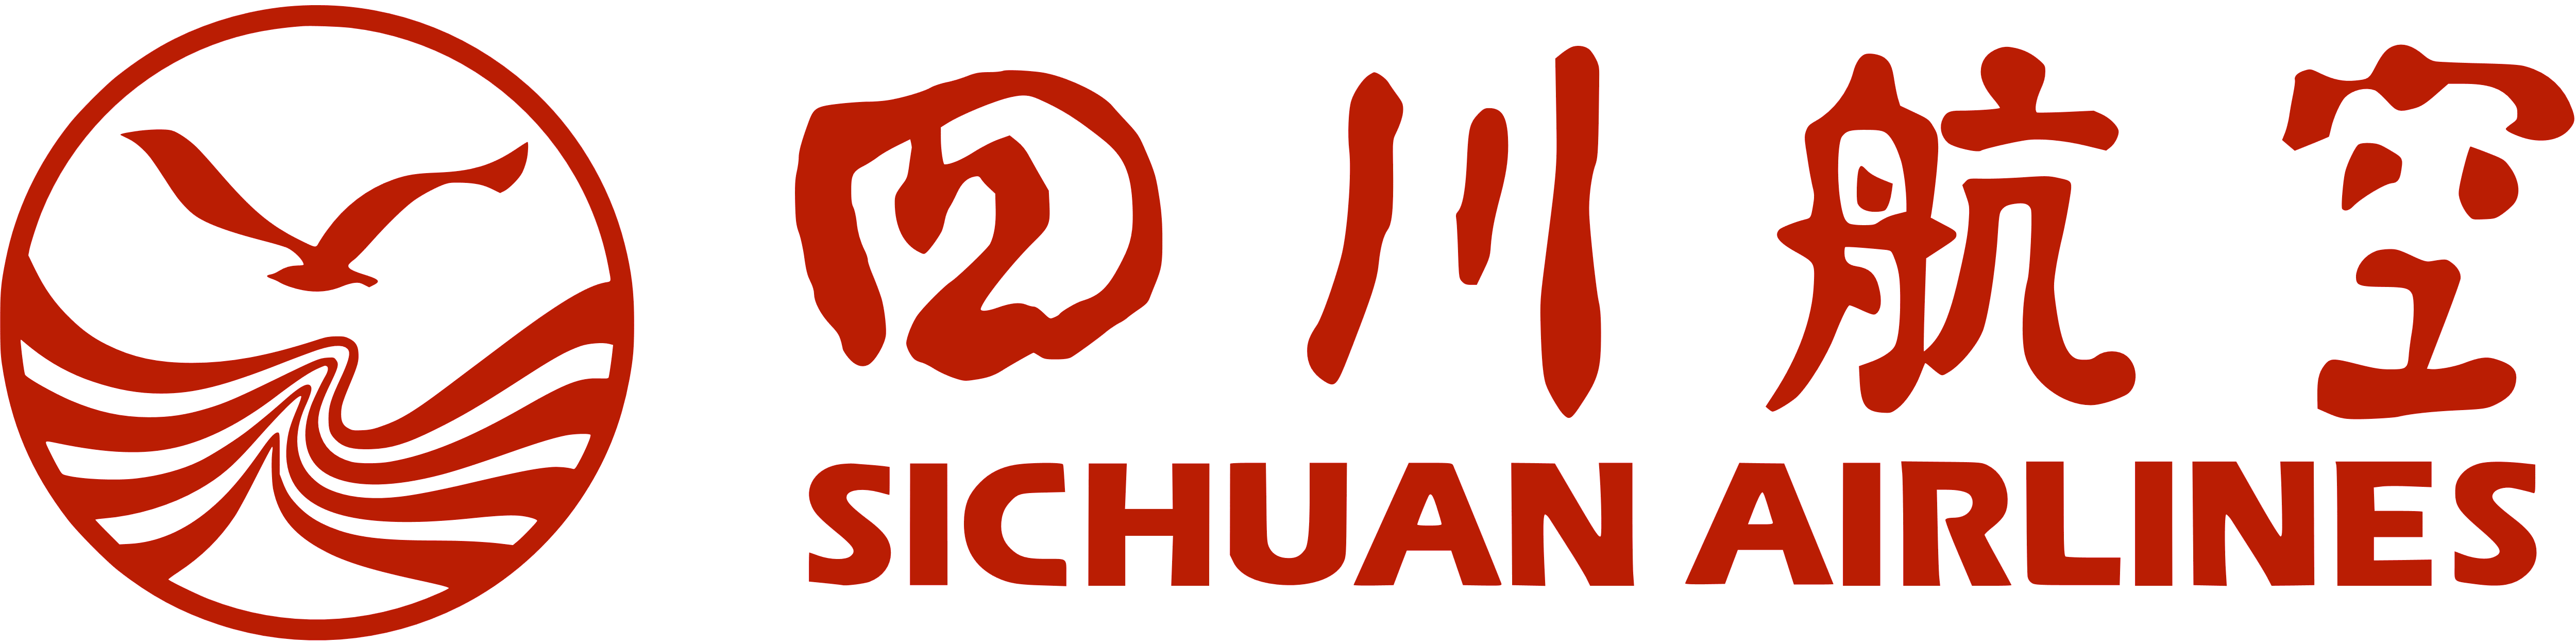 خطوط سيتشوان الصينية